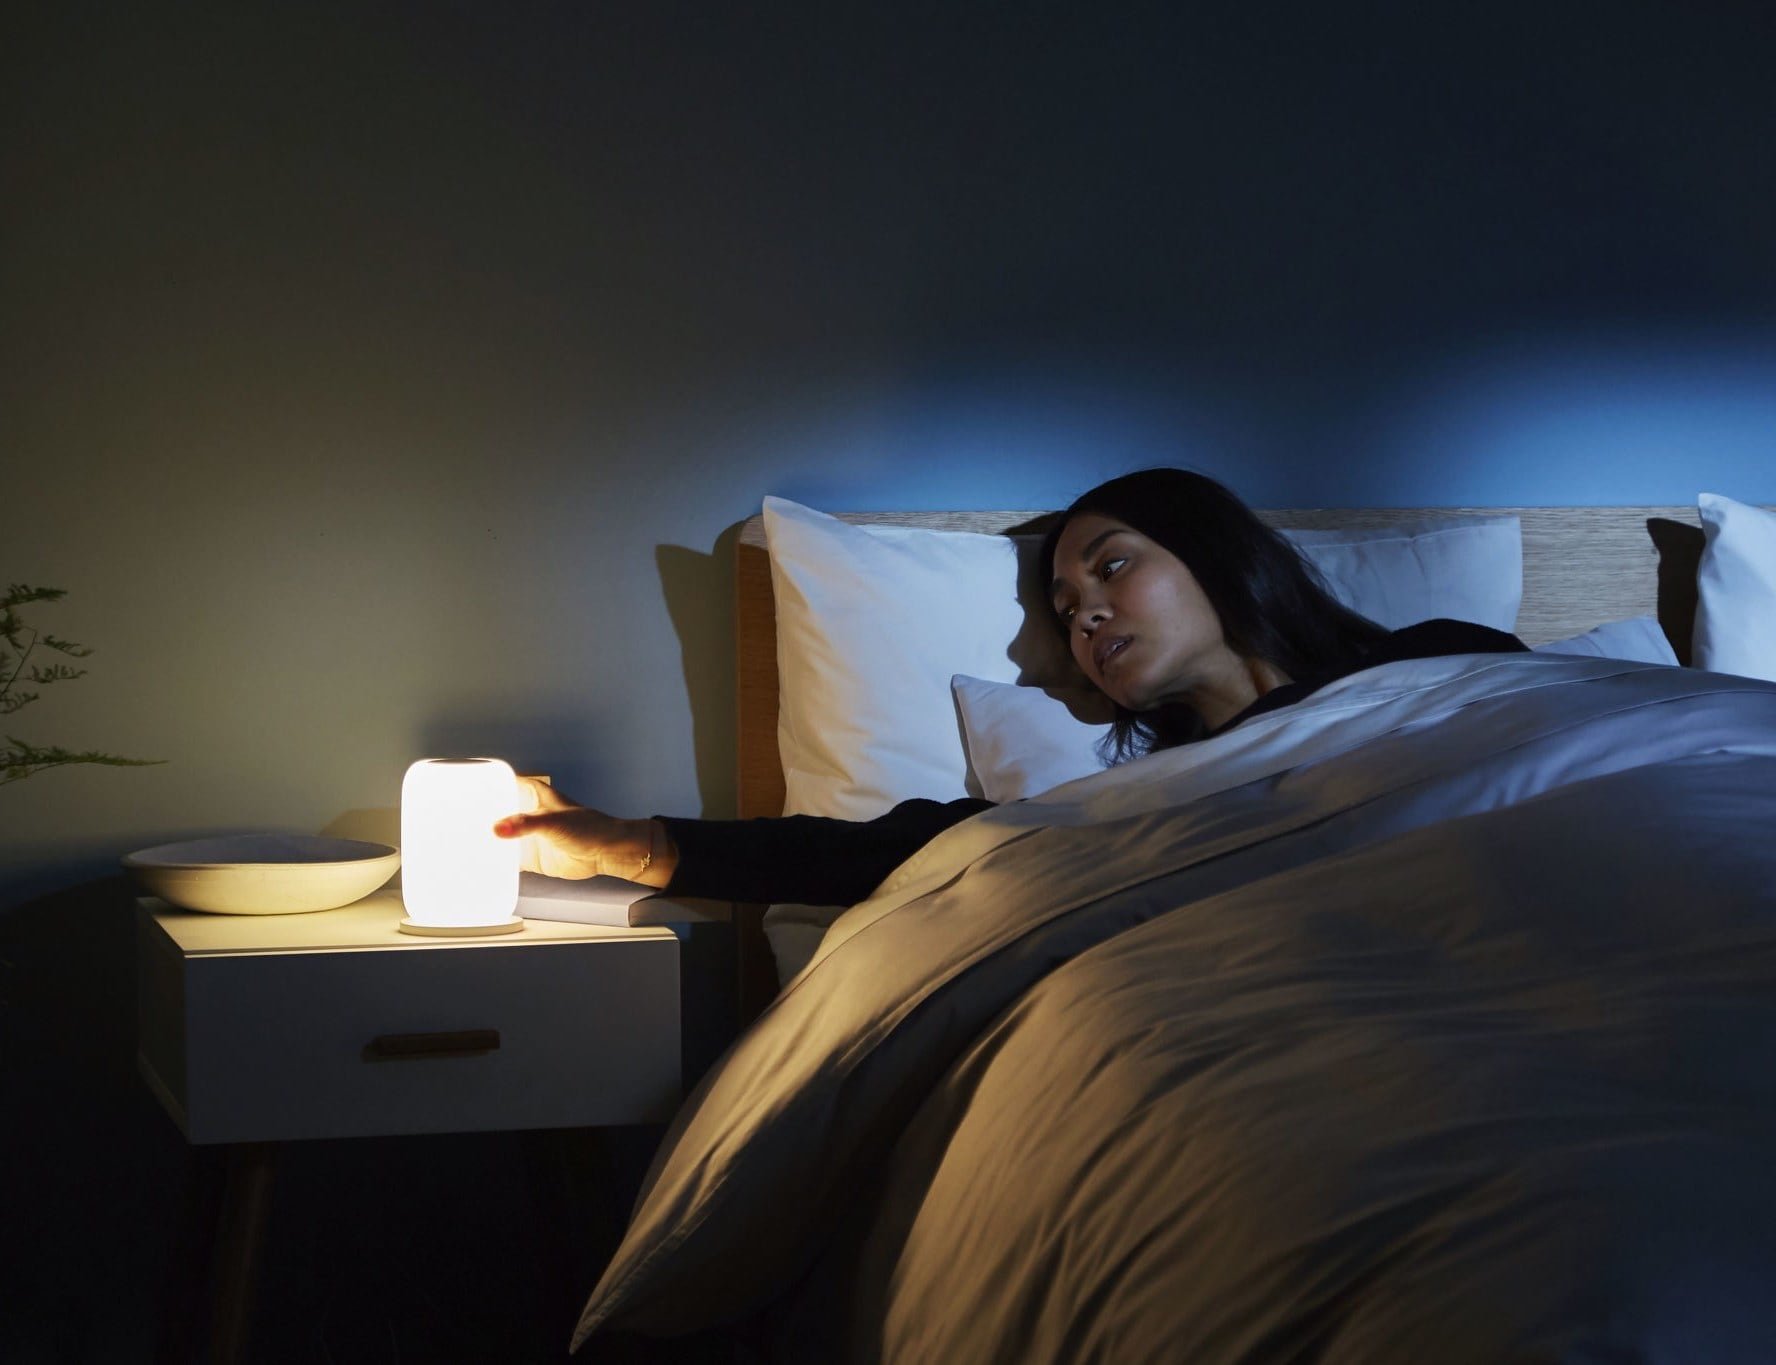 Casper Glow Smart Sleeping Light helps you fall asleep faster